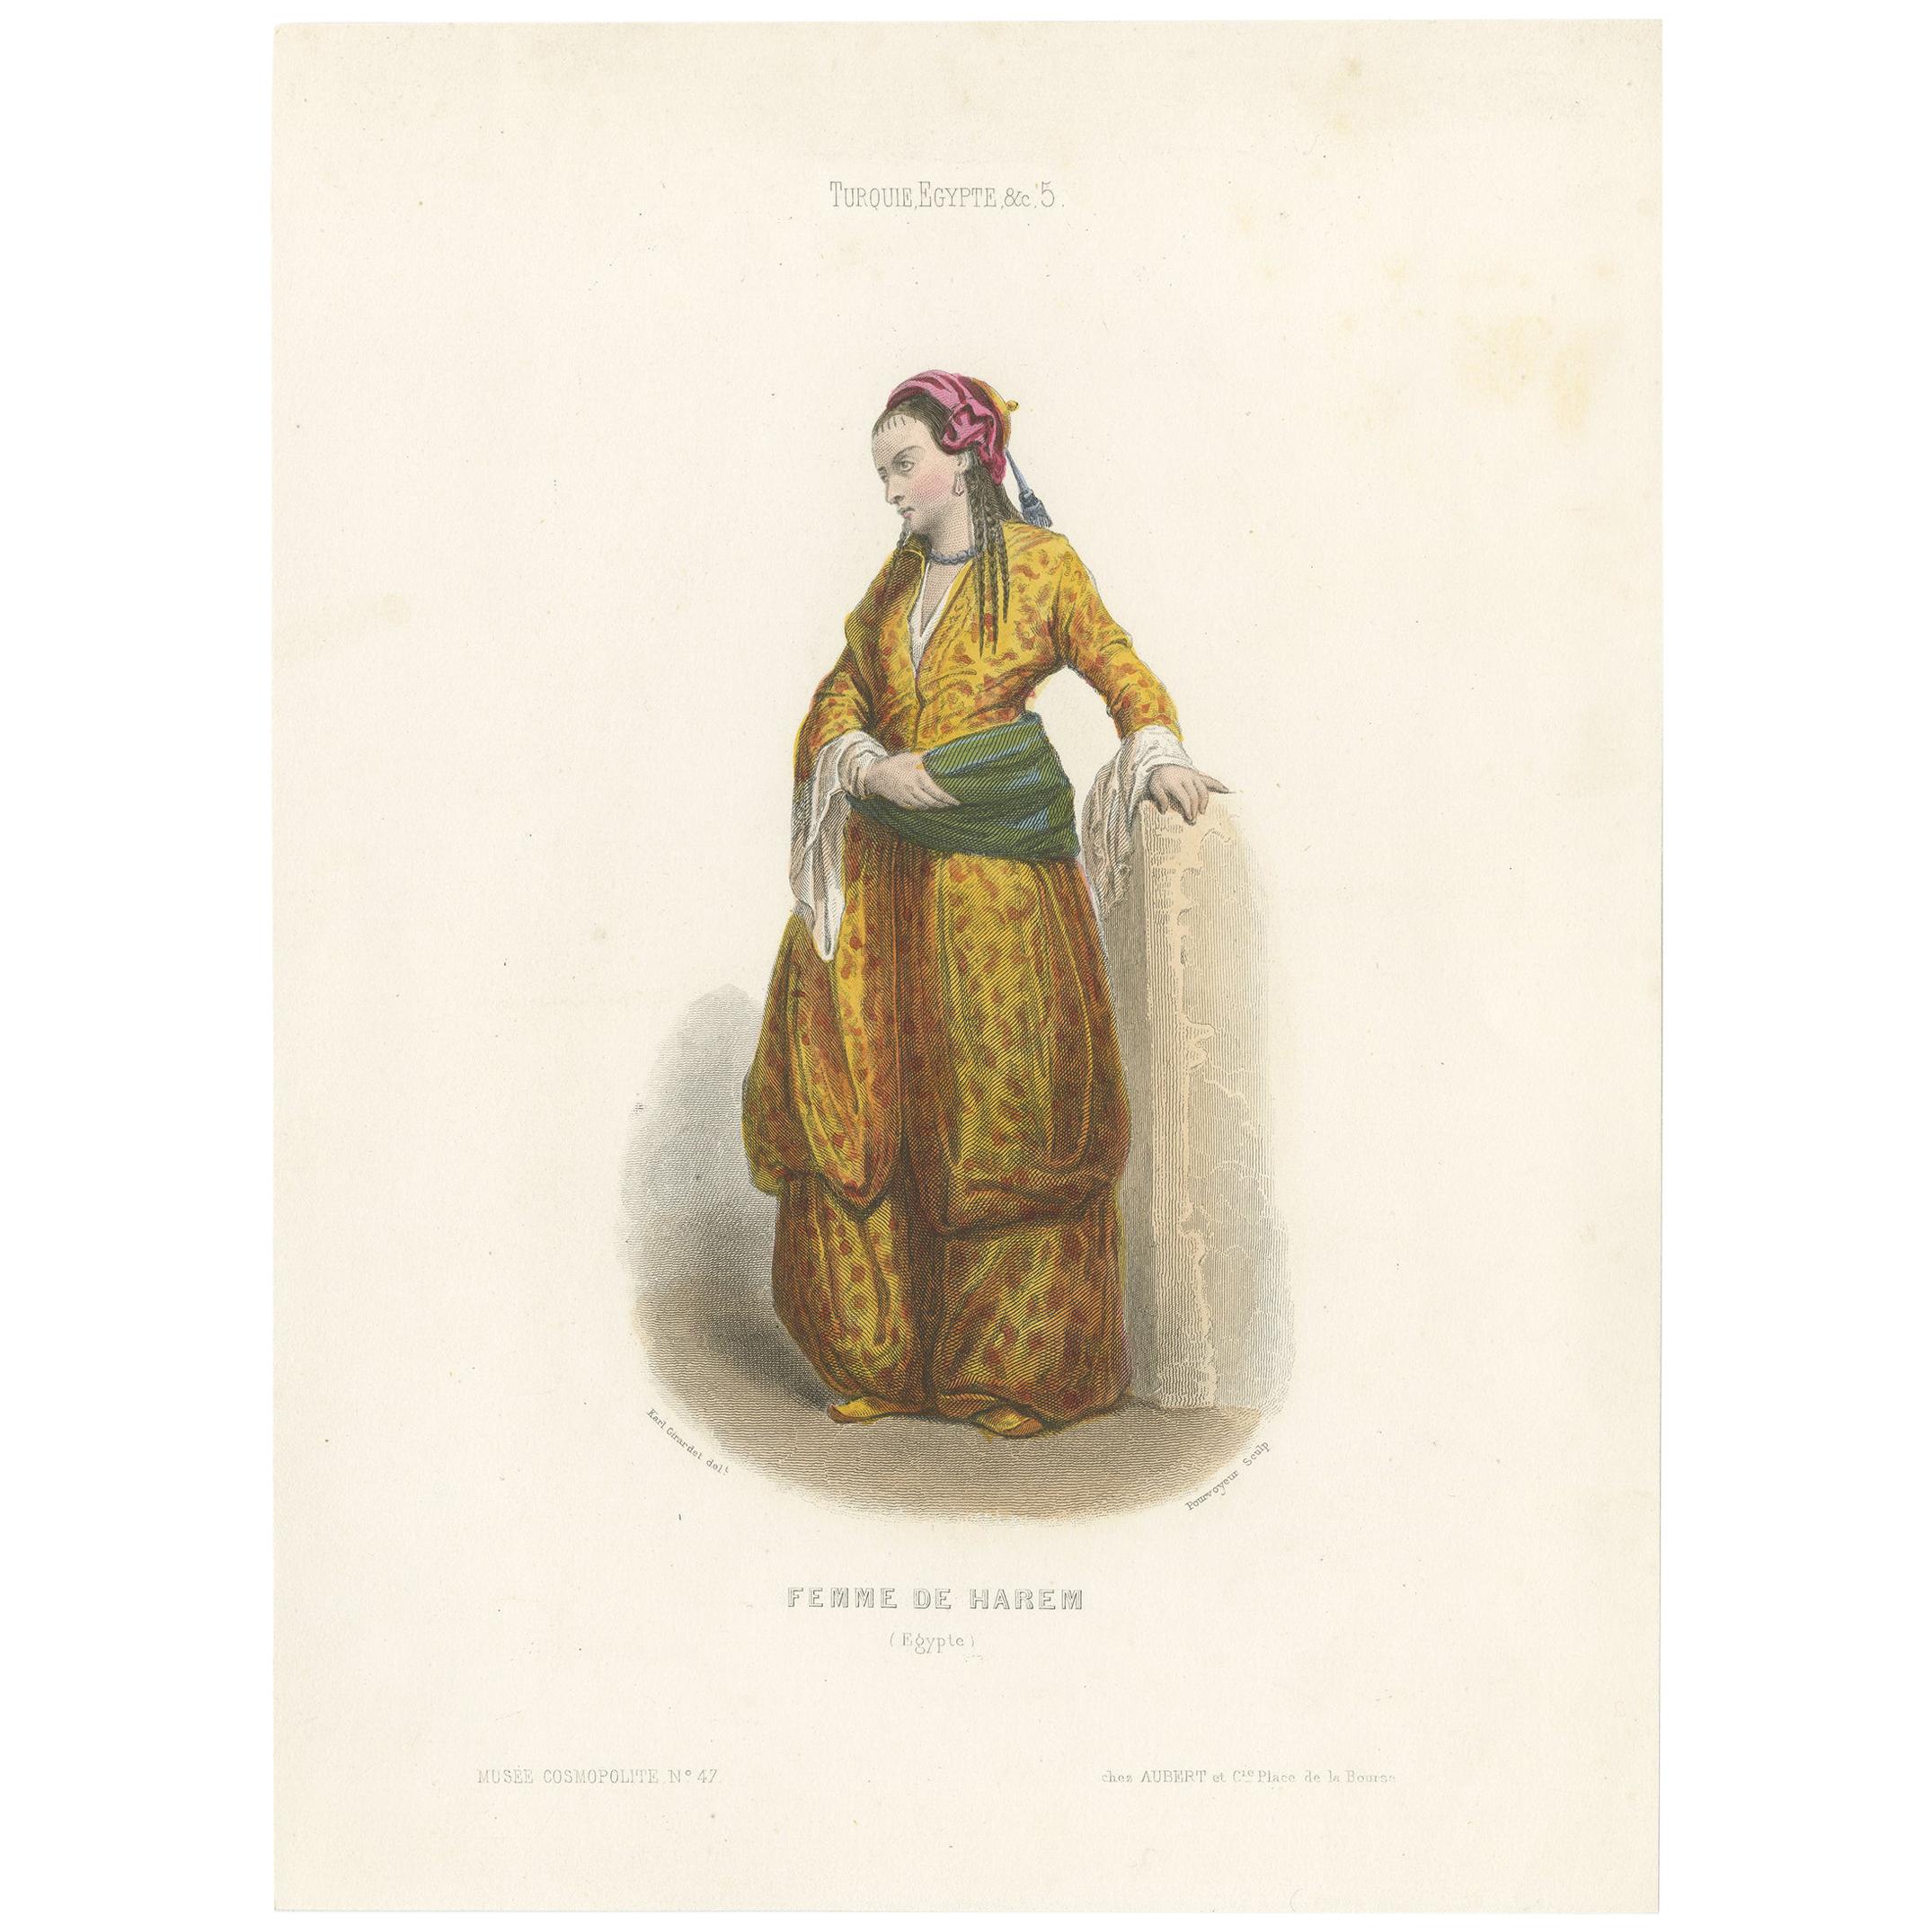 Impression costume ancienne d'une femme de garde d'Égypte par Aubert, 1850